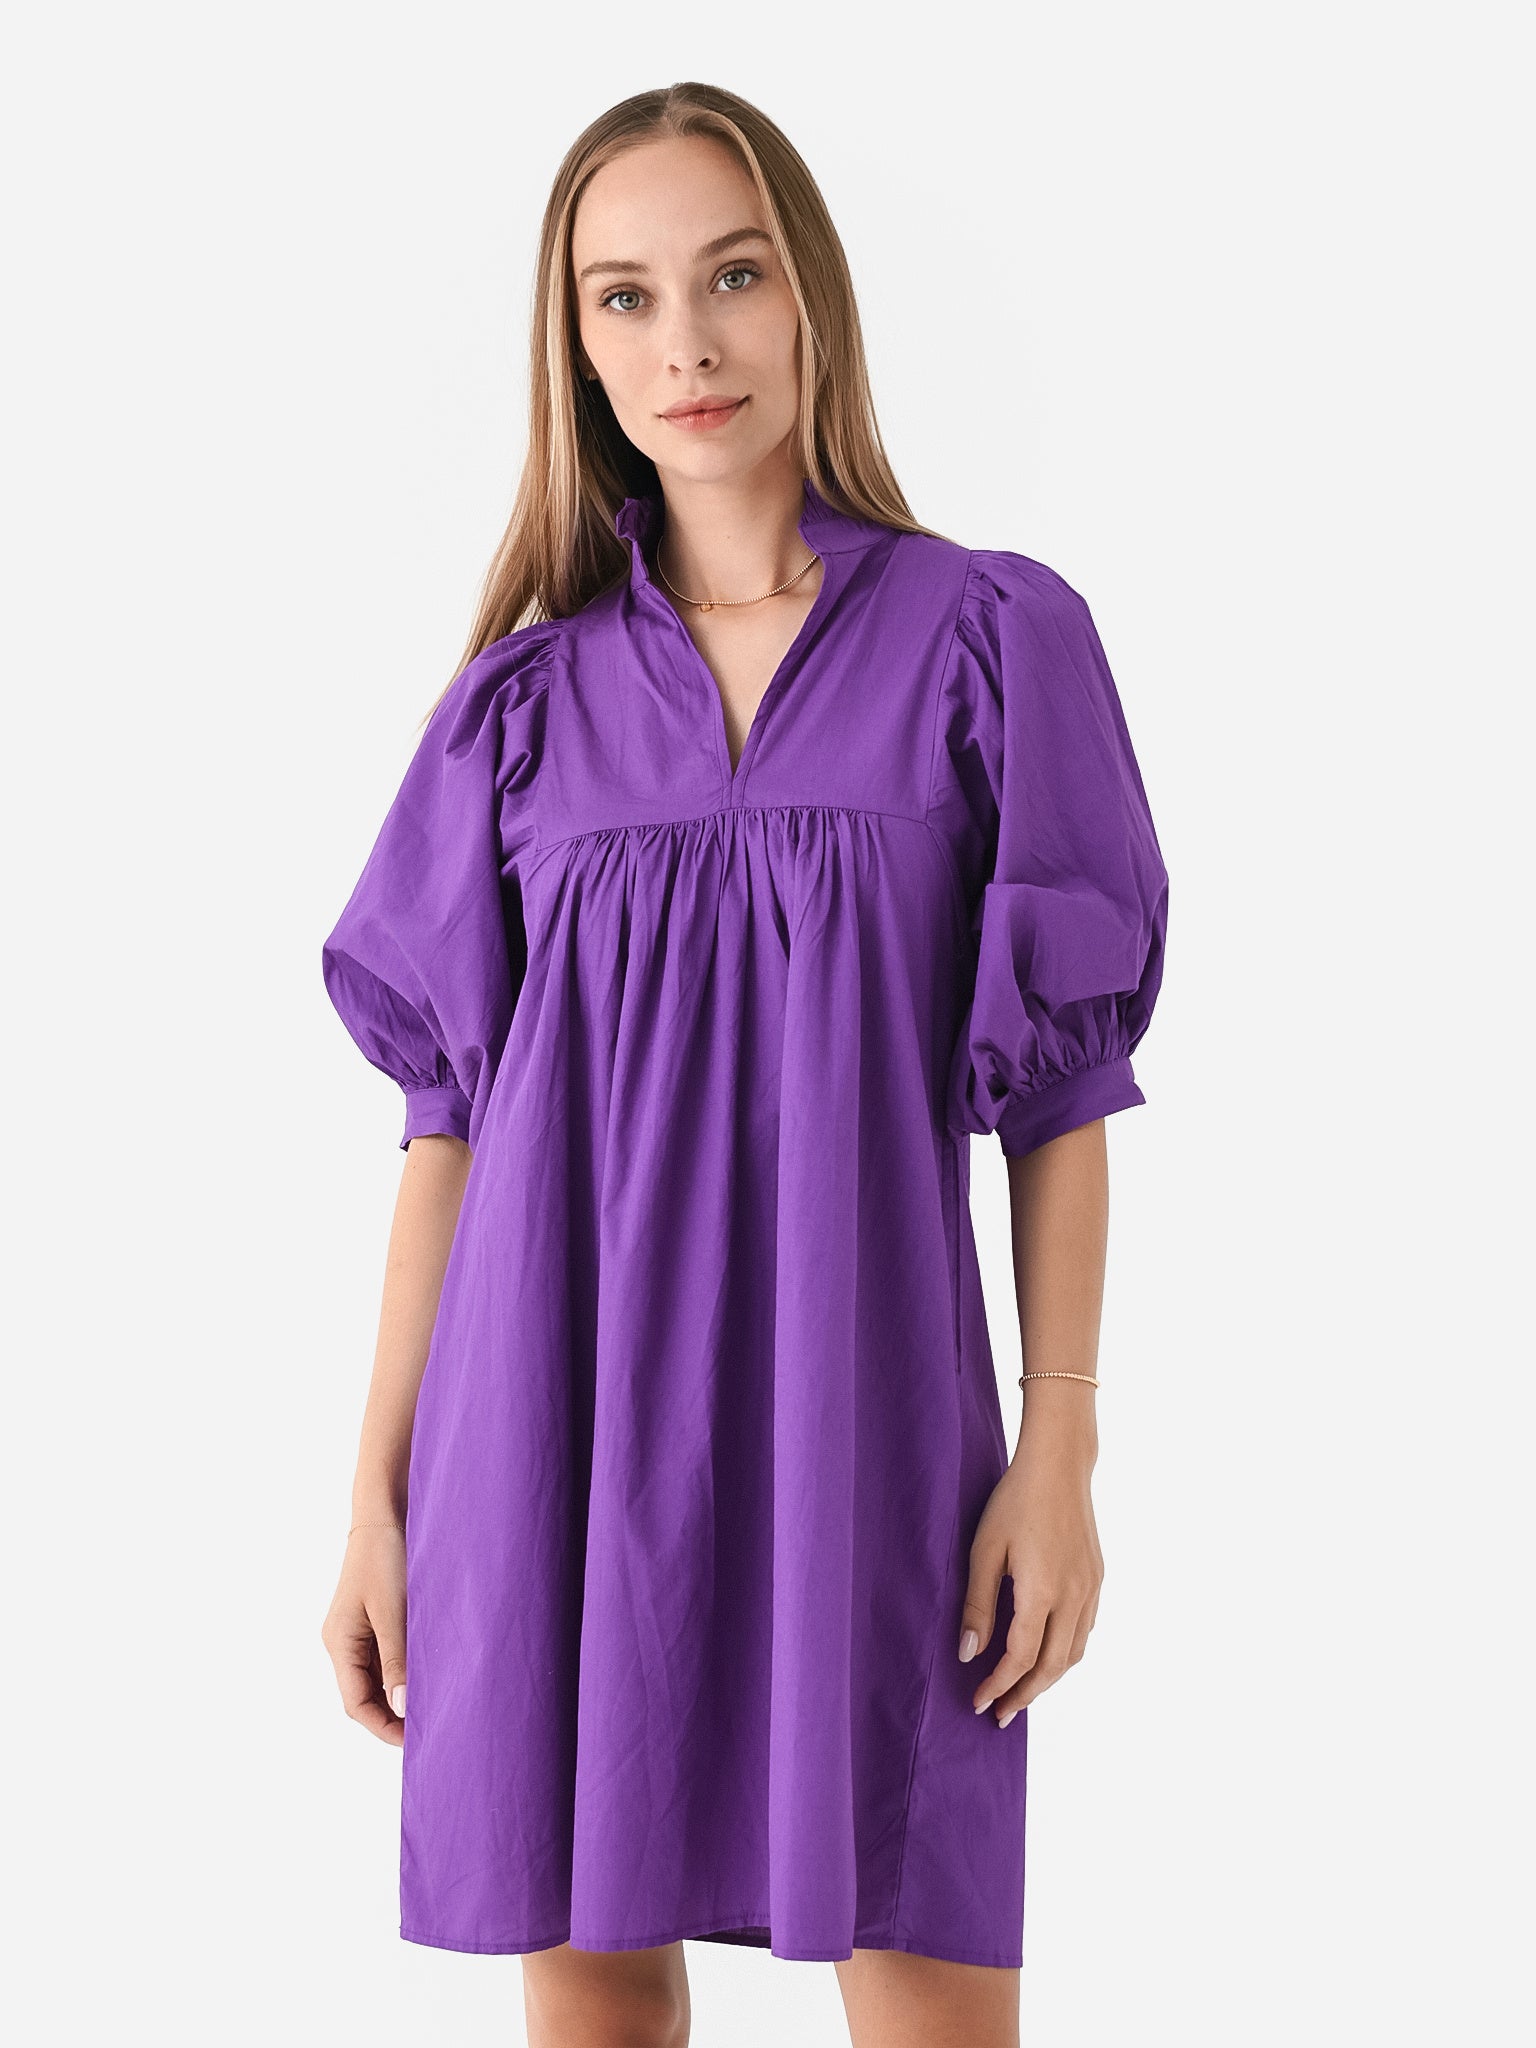 Never A Wallflower Women's High Neck Dress – saintbernard.com